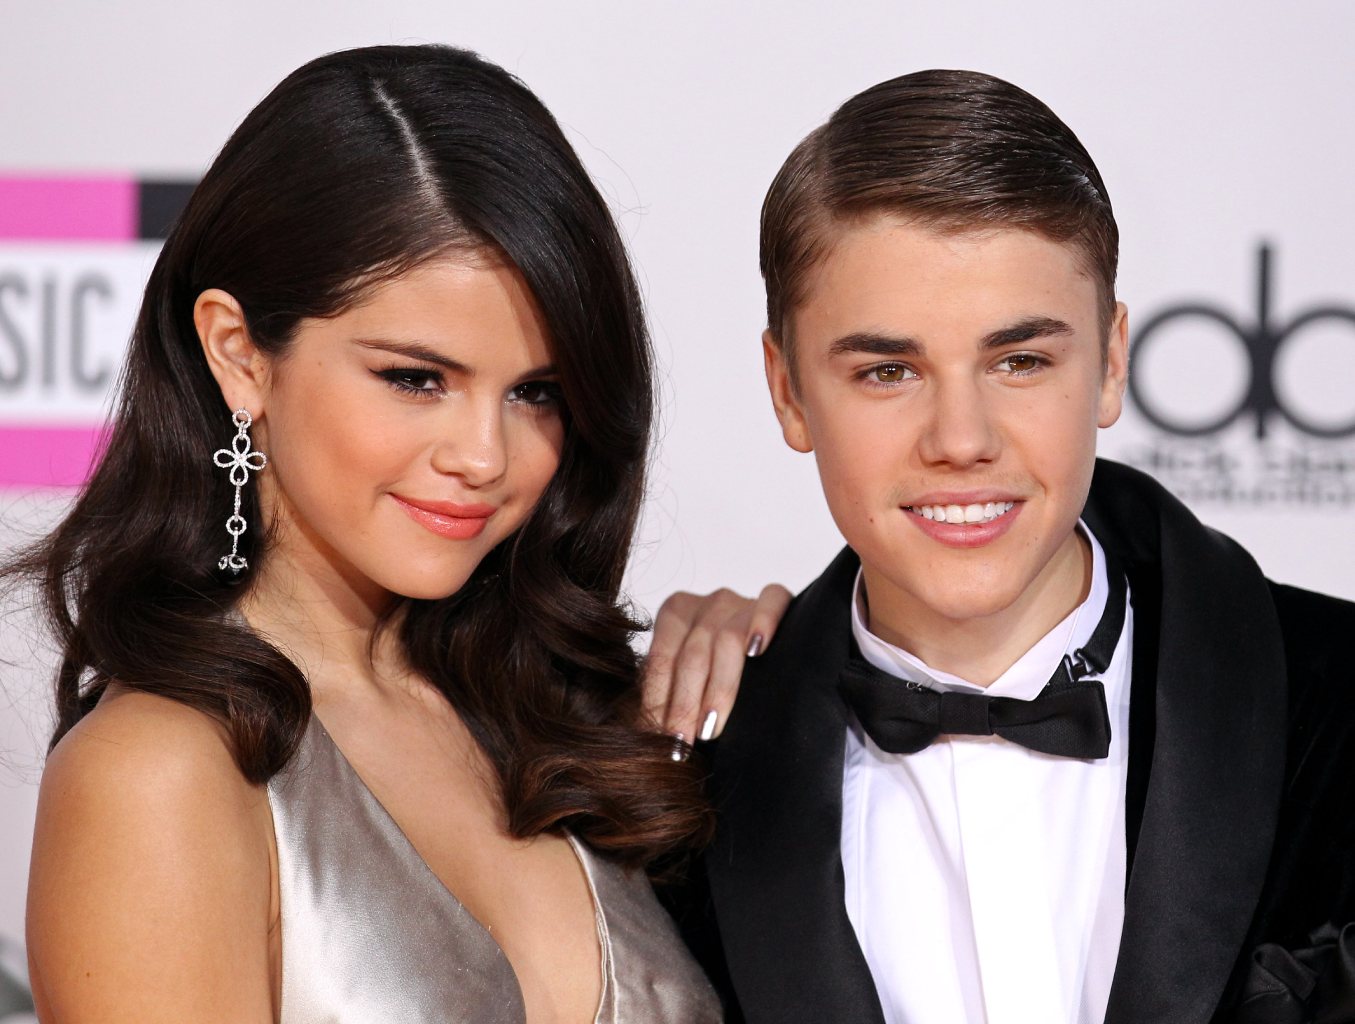 Selena Gomez Mocks Justin Bieber Romance With 'Red Flags' TikTok